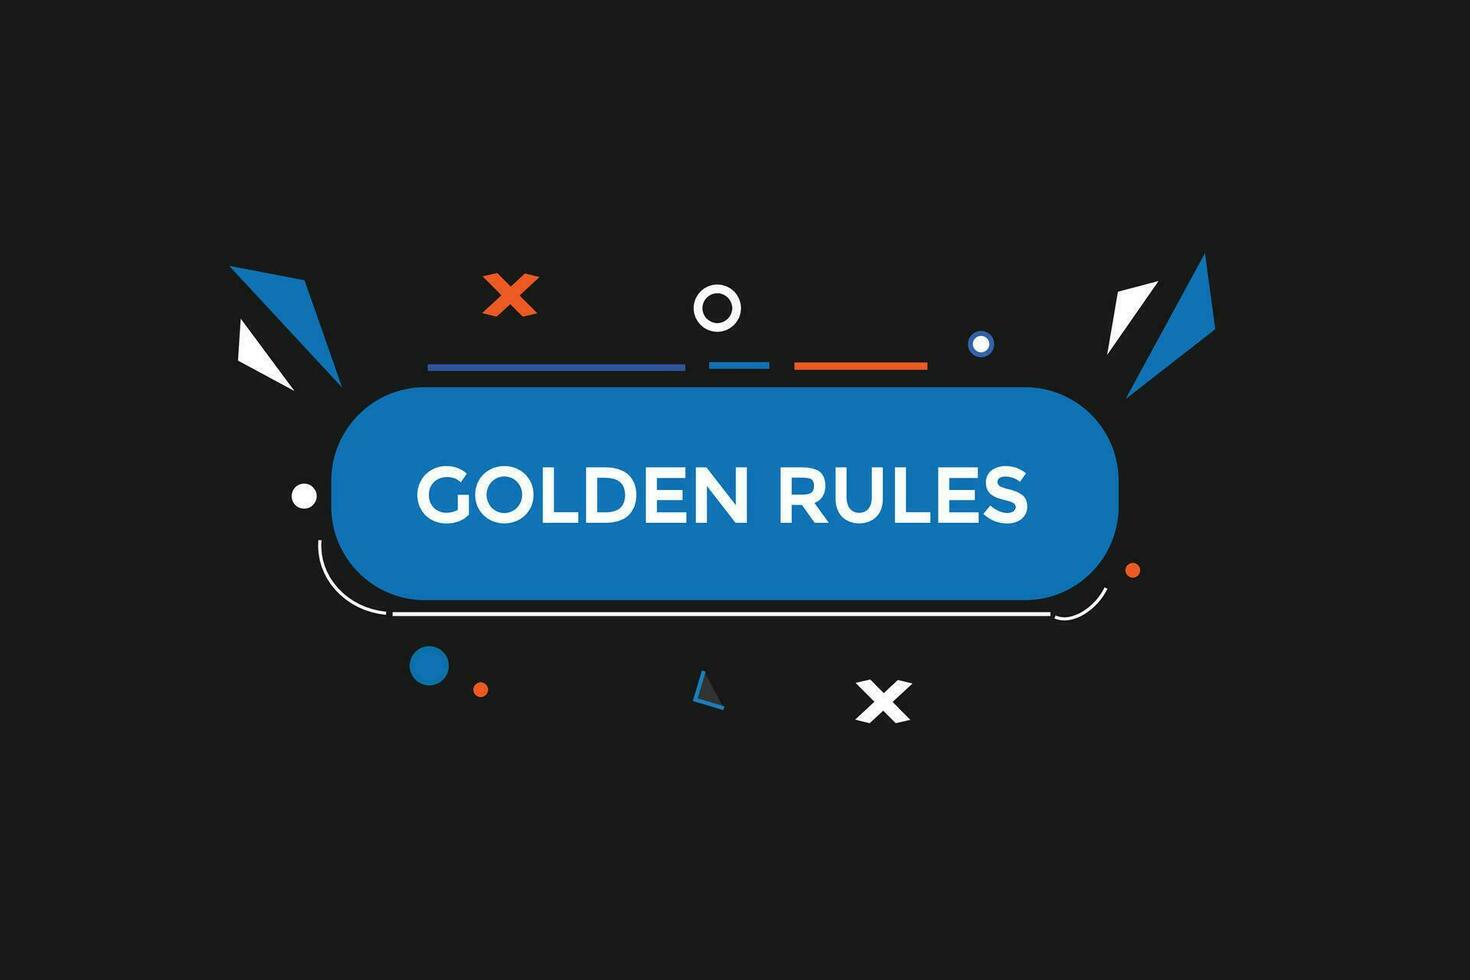 nuovo d'oro regole ,moderno, sito web, clic pulsante, livello, cartello, discorso, bolla striscione, vettore